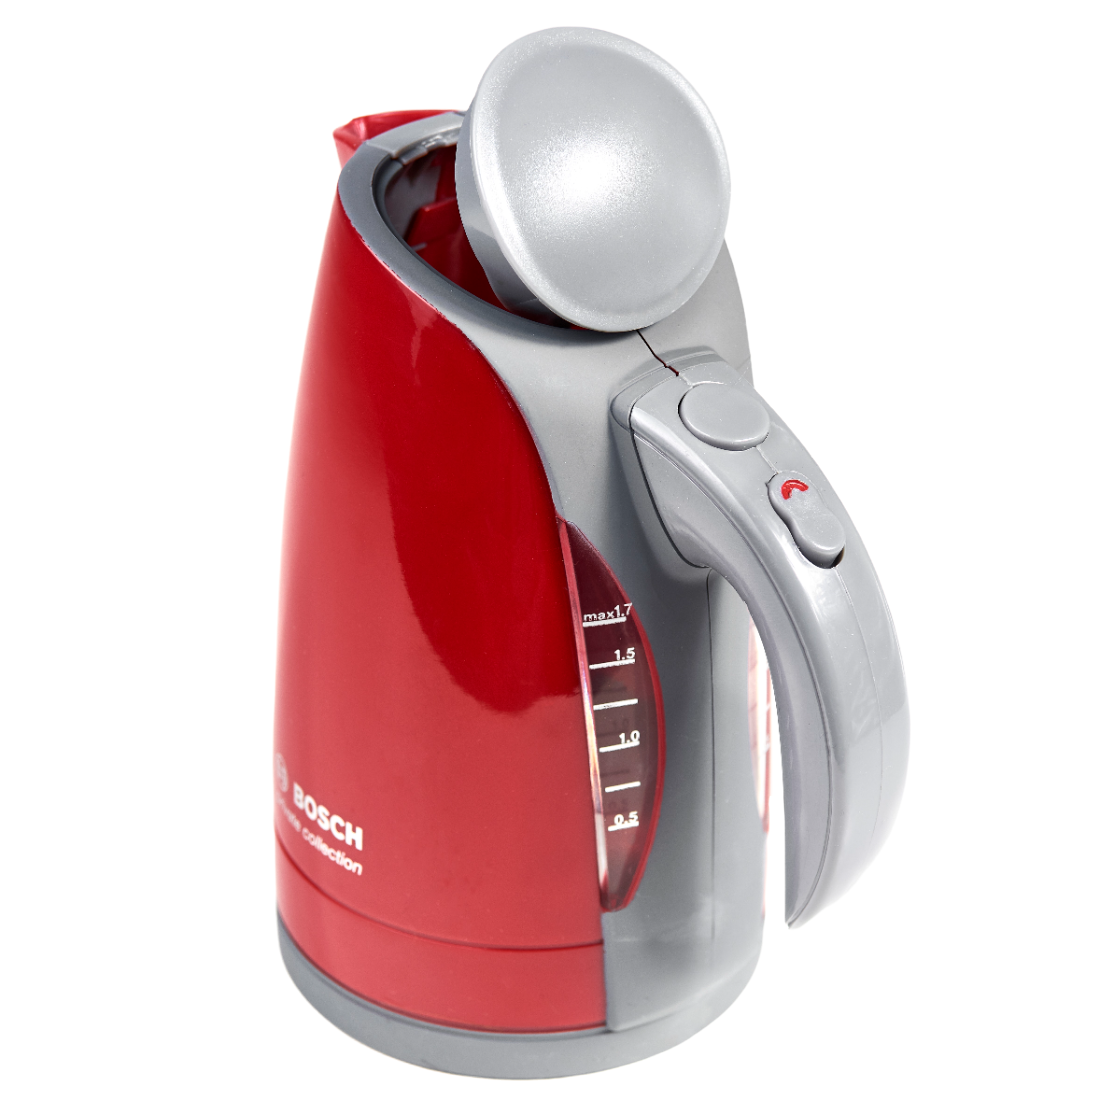 Игрушечный набор Bosch Mini Чайник, красный с серым (9548) - фото 1